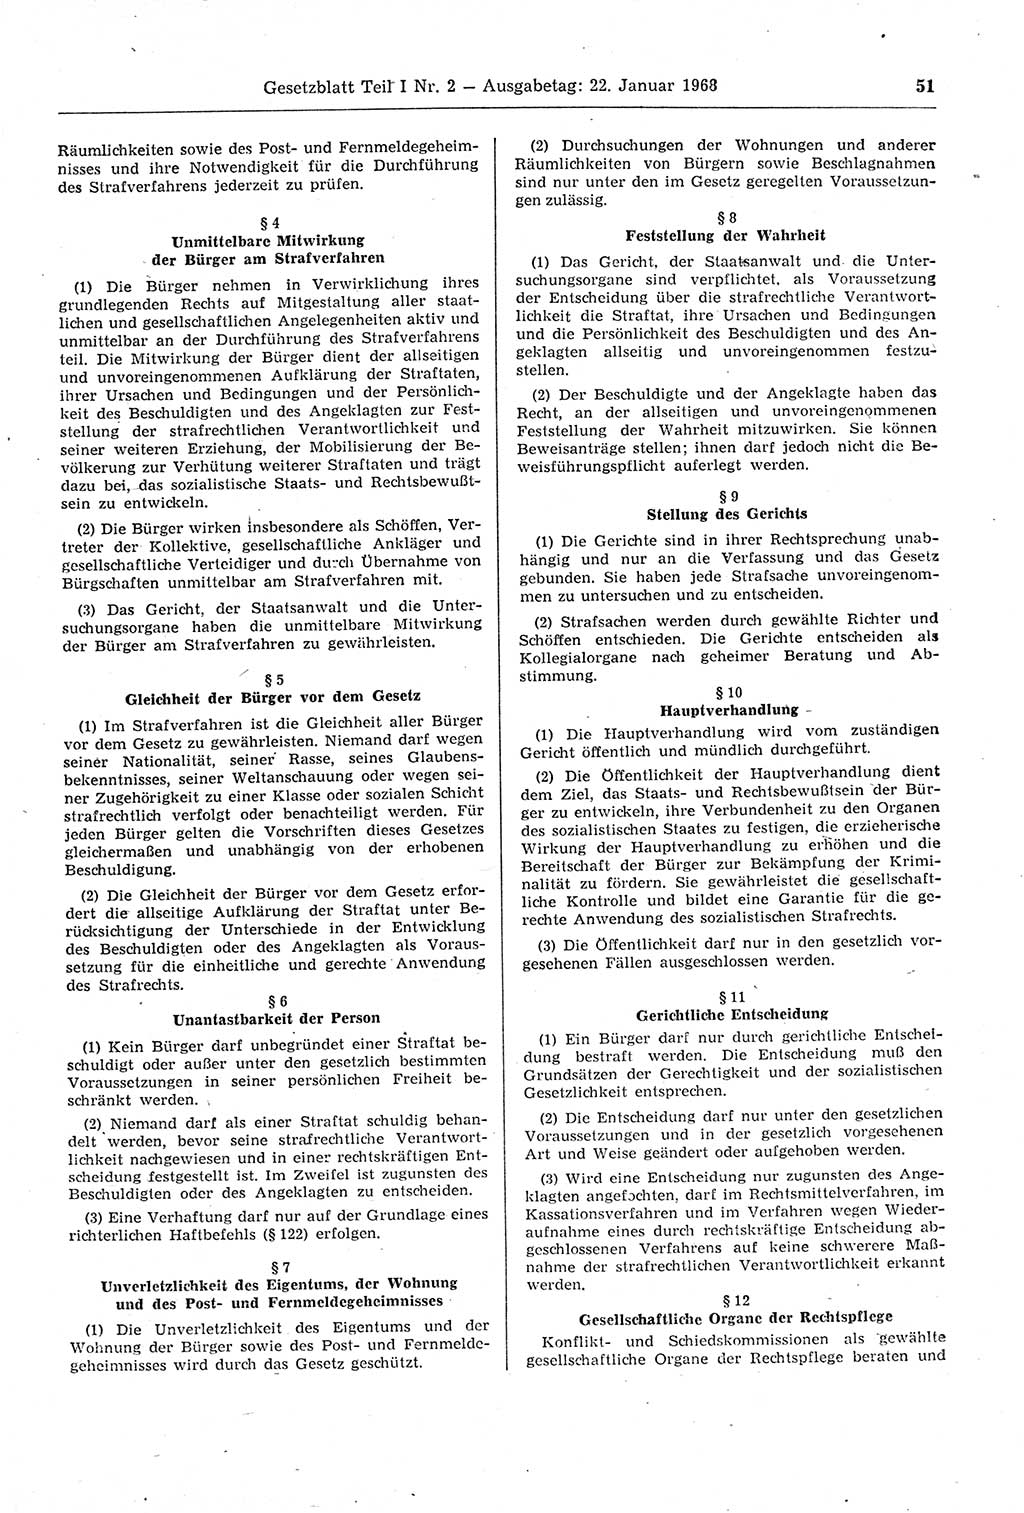 Gesetzblatt (GBl.) der Deutschen Demokratischen Republik (DDR) Teil Ⅰ 1968, Seite 51 (GBl. DDR Ⅰ 1968, S. 51)